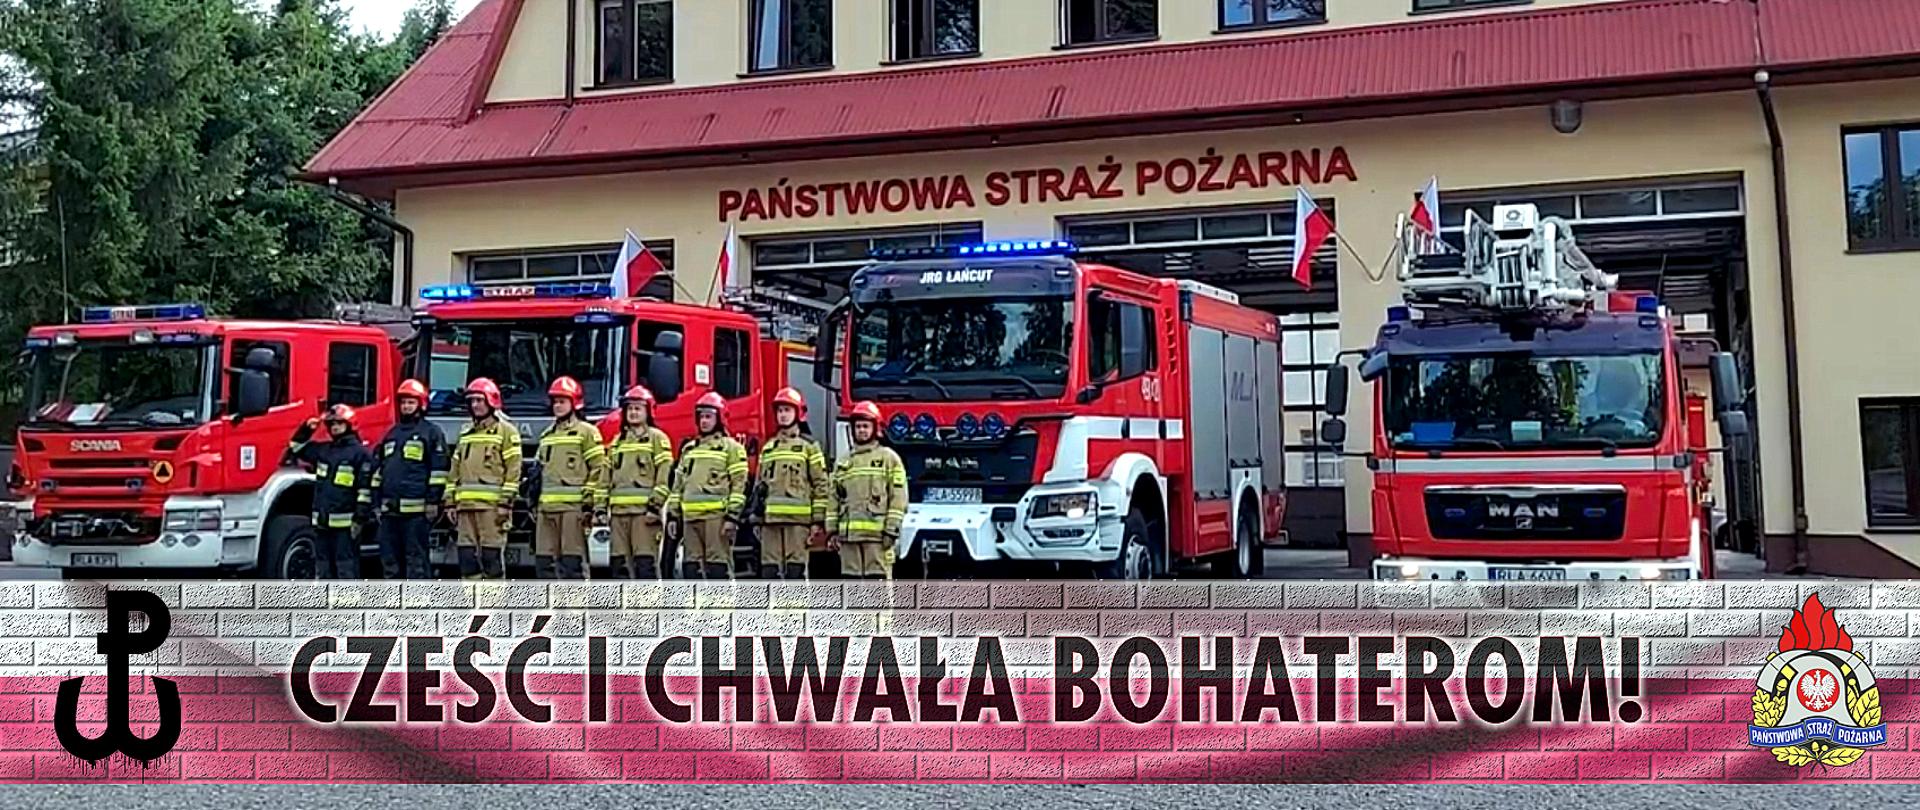 Na zdjęciu ośmiu strażakach w ubraniach specjalnych stoi w szeregu. Za nimi ustawione samochody pożarnicze.Nad samochodami, na ścianie budynku napis Państwowa Straż Pożarna. Na dole zdjęcia biało czerwona wstęga z symbolem Polski Walczącej , logo PSP oraz napisem Cześć i chwała bohaterom!